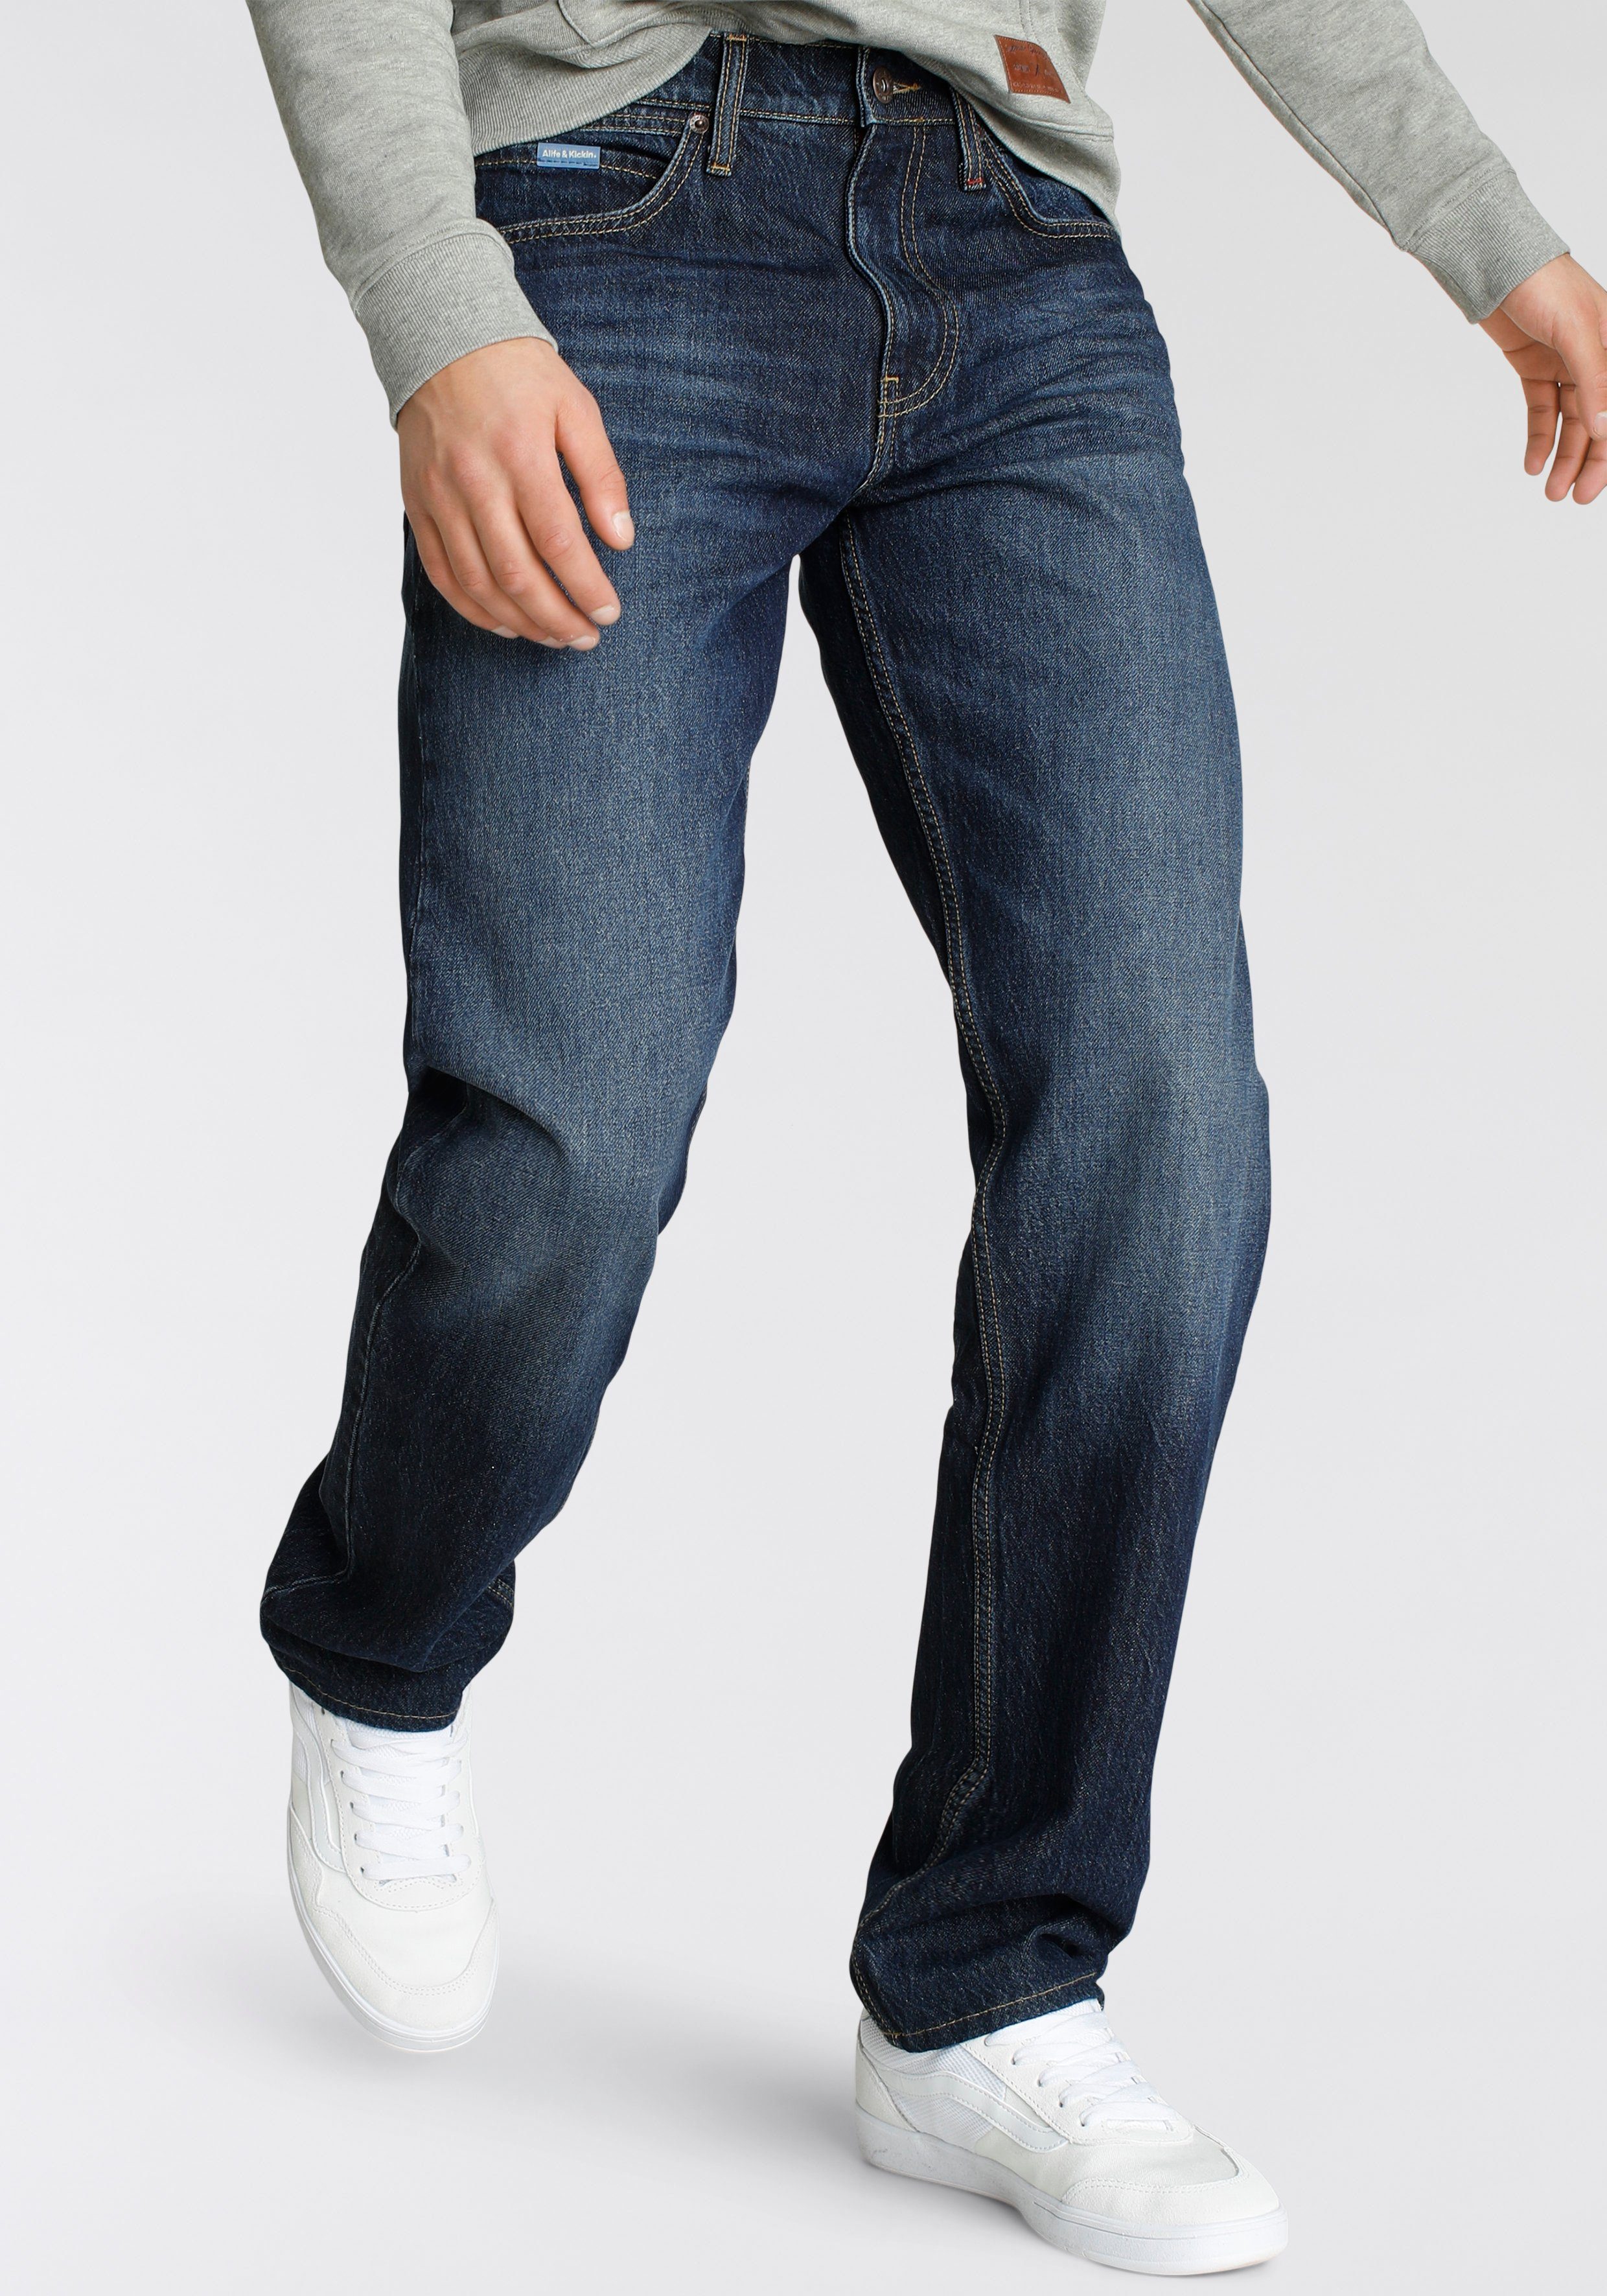 & Alife Loose-fit-Jeans dark durch wassersparende Kickin Ozon Wash Produktion blue Ökologische, AlecAK